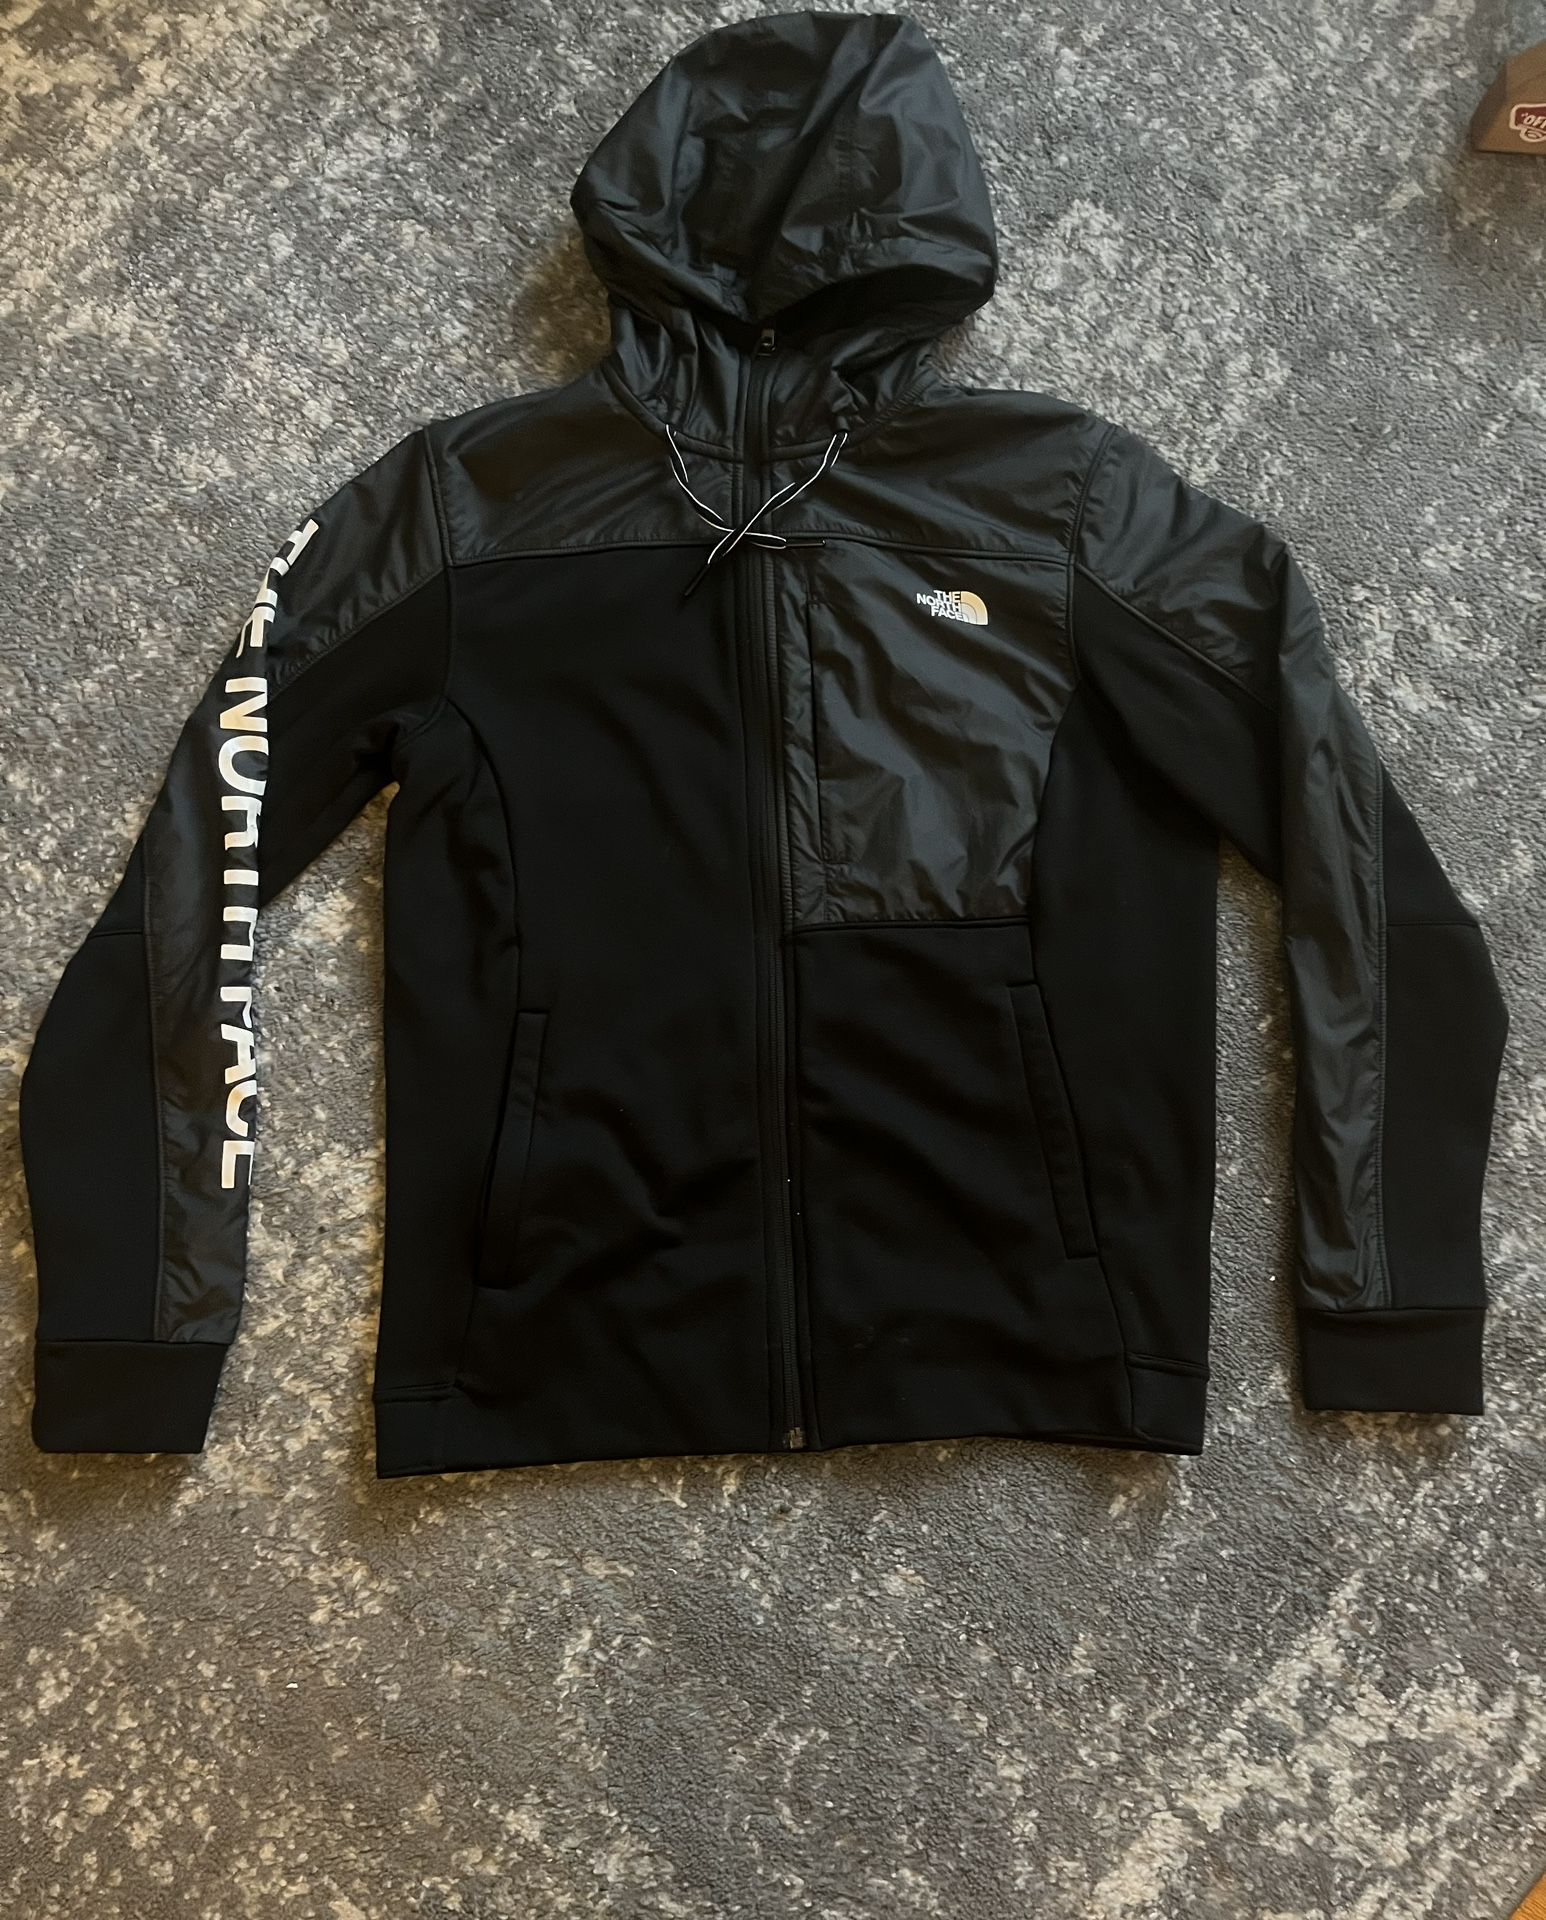 North Face Zip Jacket/hoodie